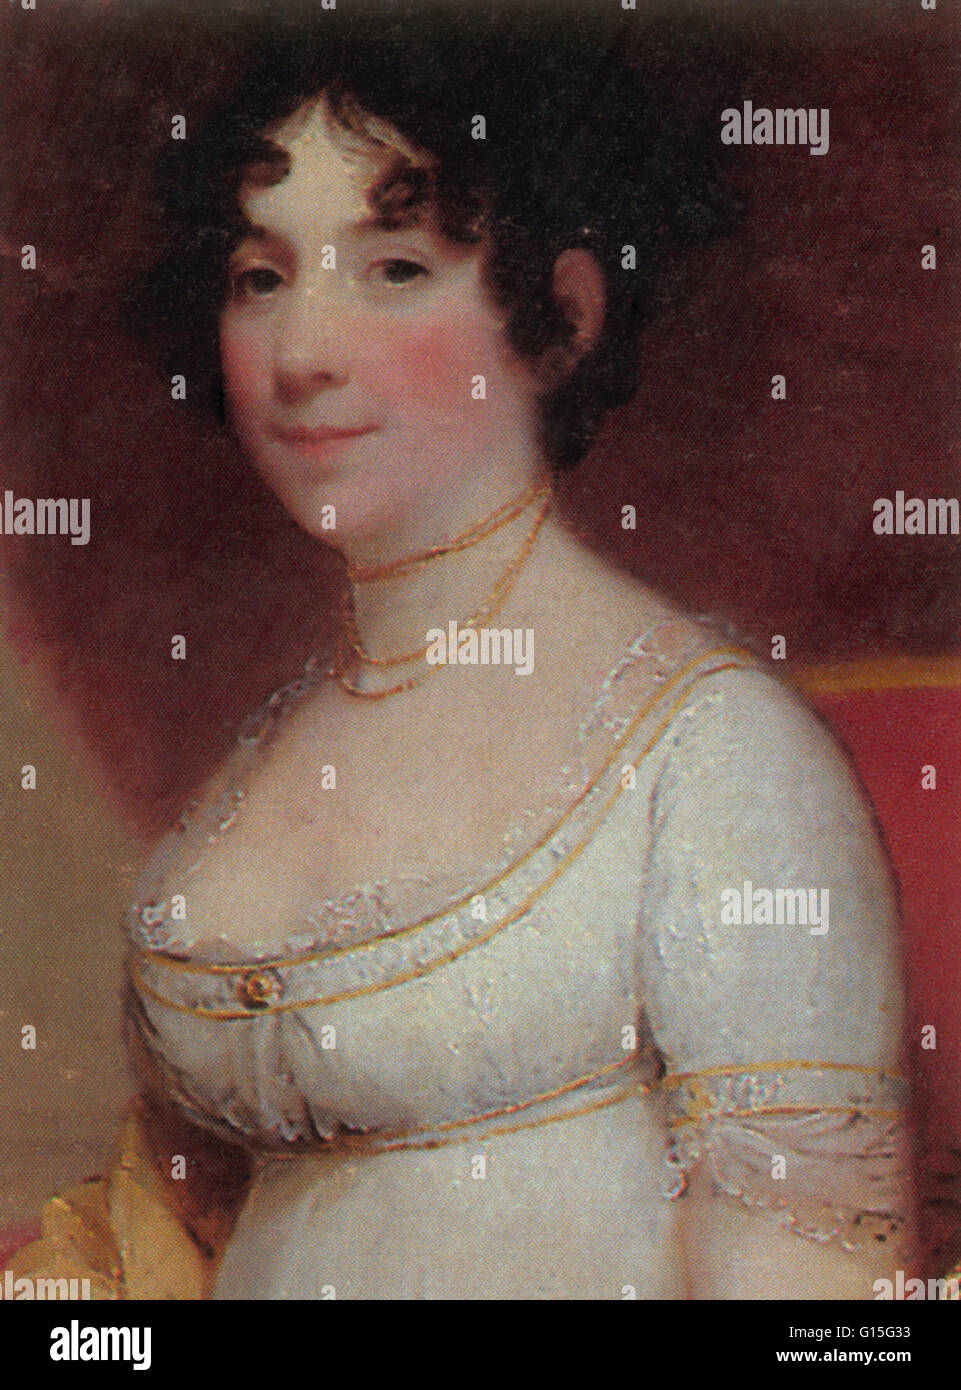 Dolley Payne Todd Madison (20. Mai 1768 - 12. Juli 1849) war die von Präsident James Madison und First Lady der Vereinigten Staaten von 1809 bis 1817. Sie zeichnete sich durch ihre sozialen Fähigkeiten und half, die Rolle der First Lady zu definieren. Ihr Erfolg als hostess Stockfoto